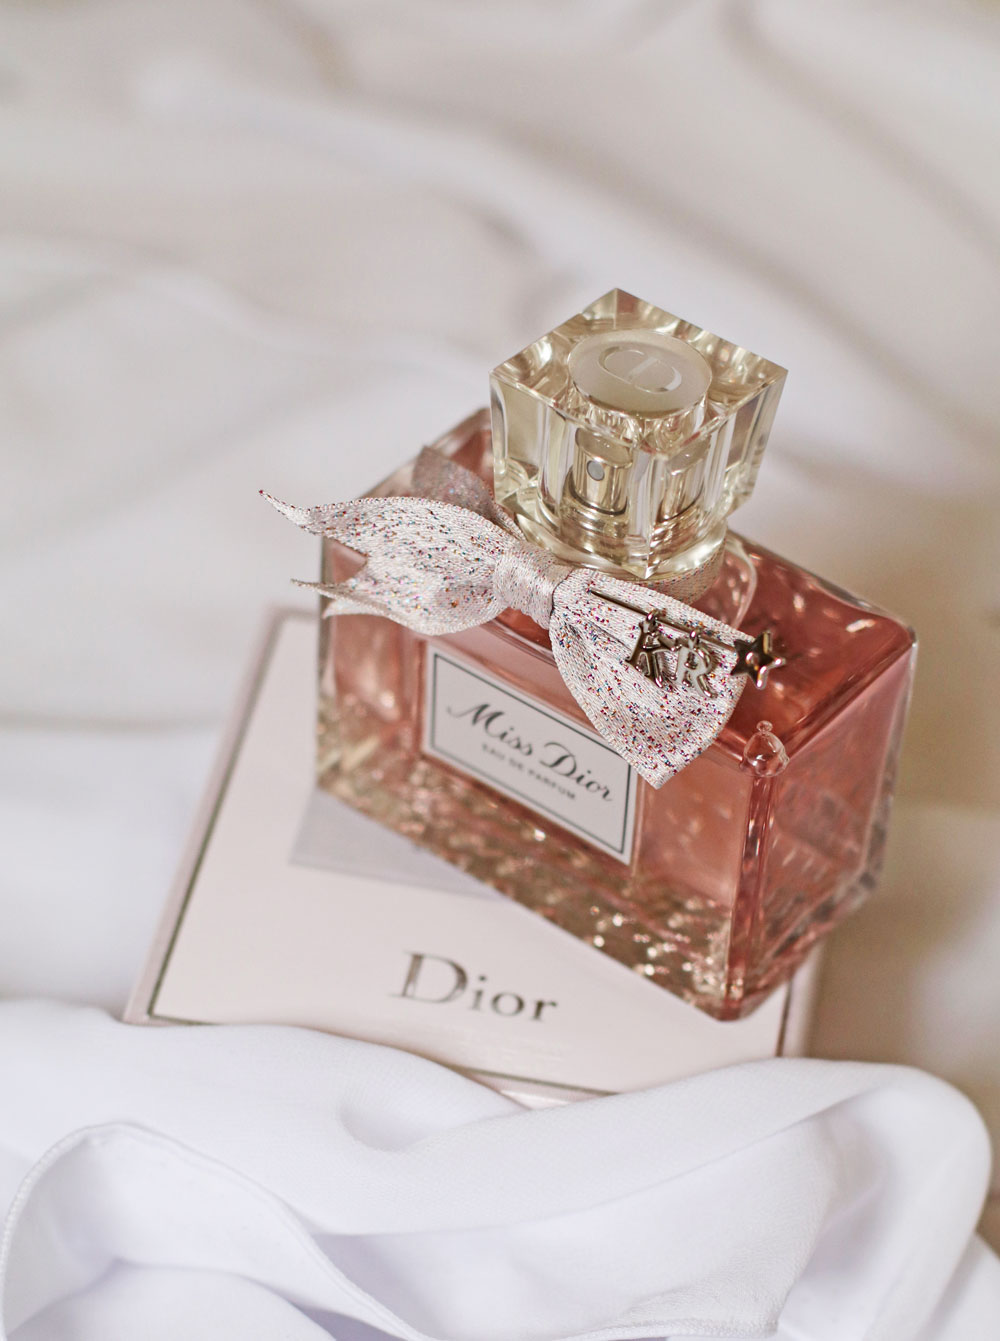 sonrisa war mit Dior in Grasse, von sie Dir alle Informationen zum neuen Damenduft Miss Dior Eau de Parfum mitbegracht hat.